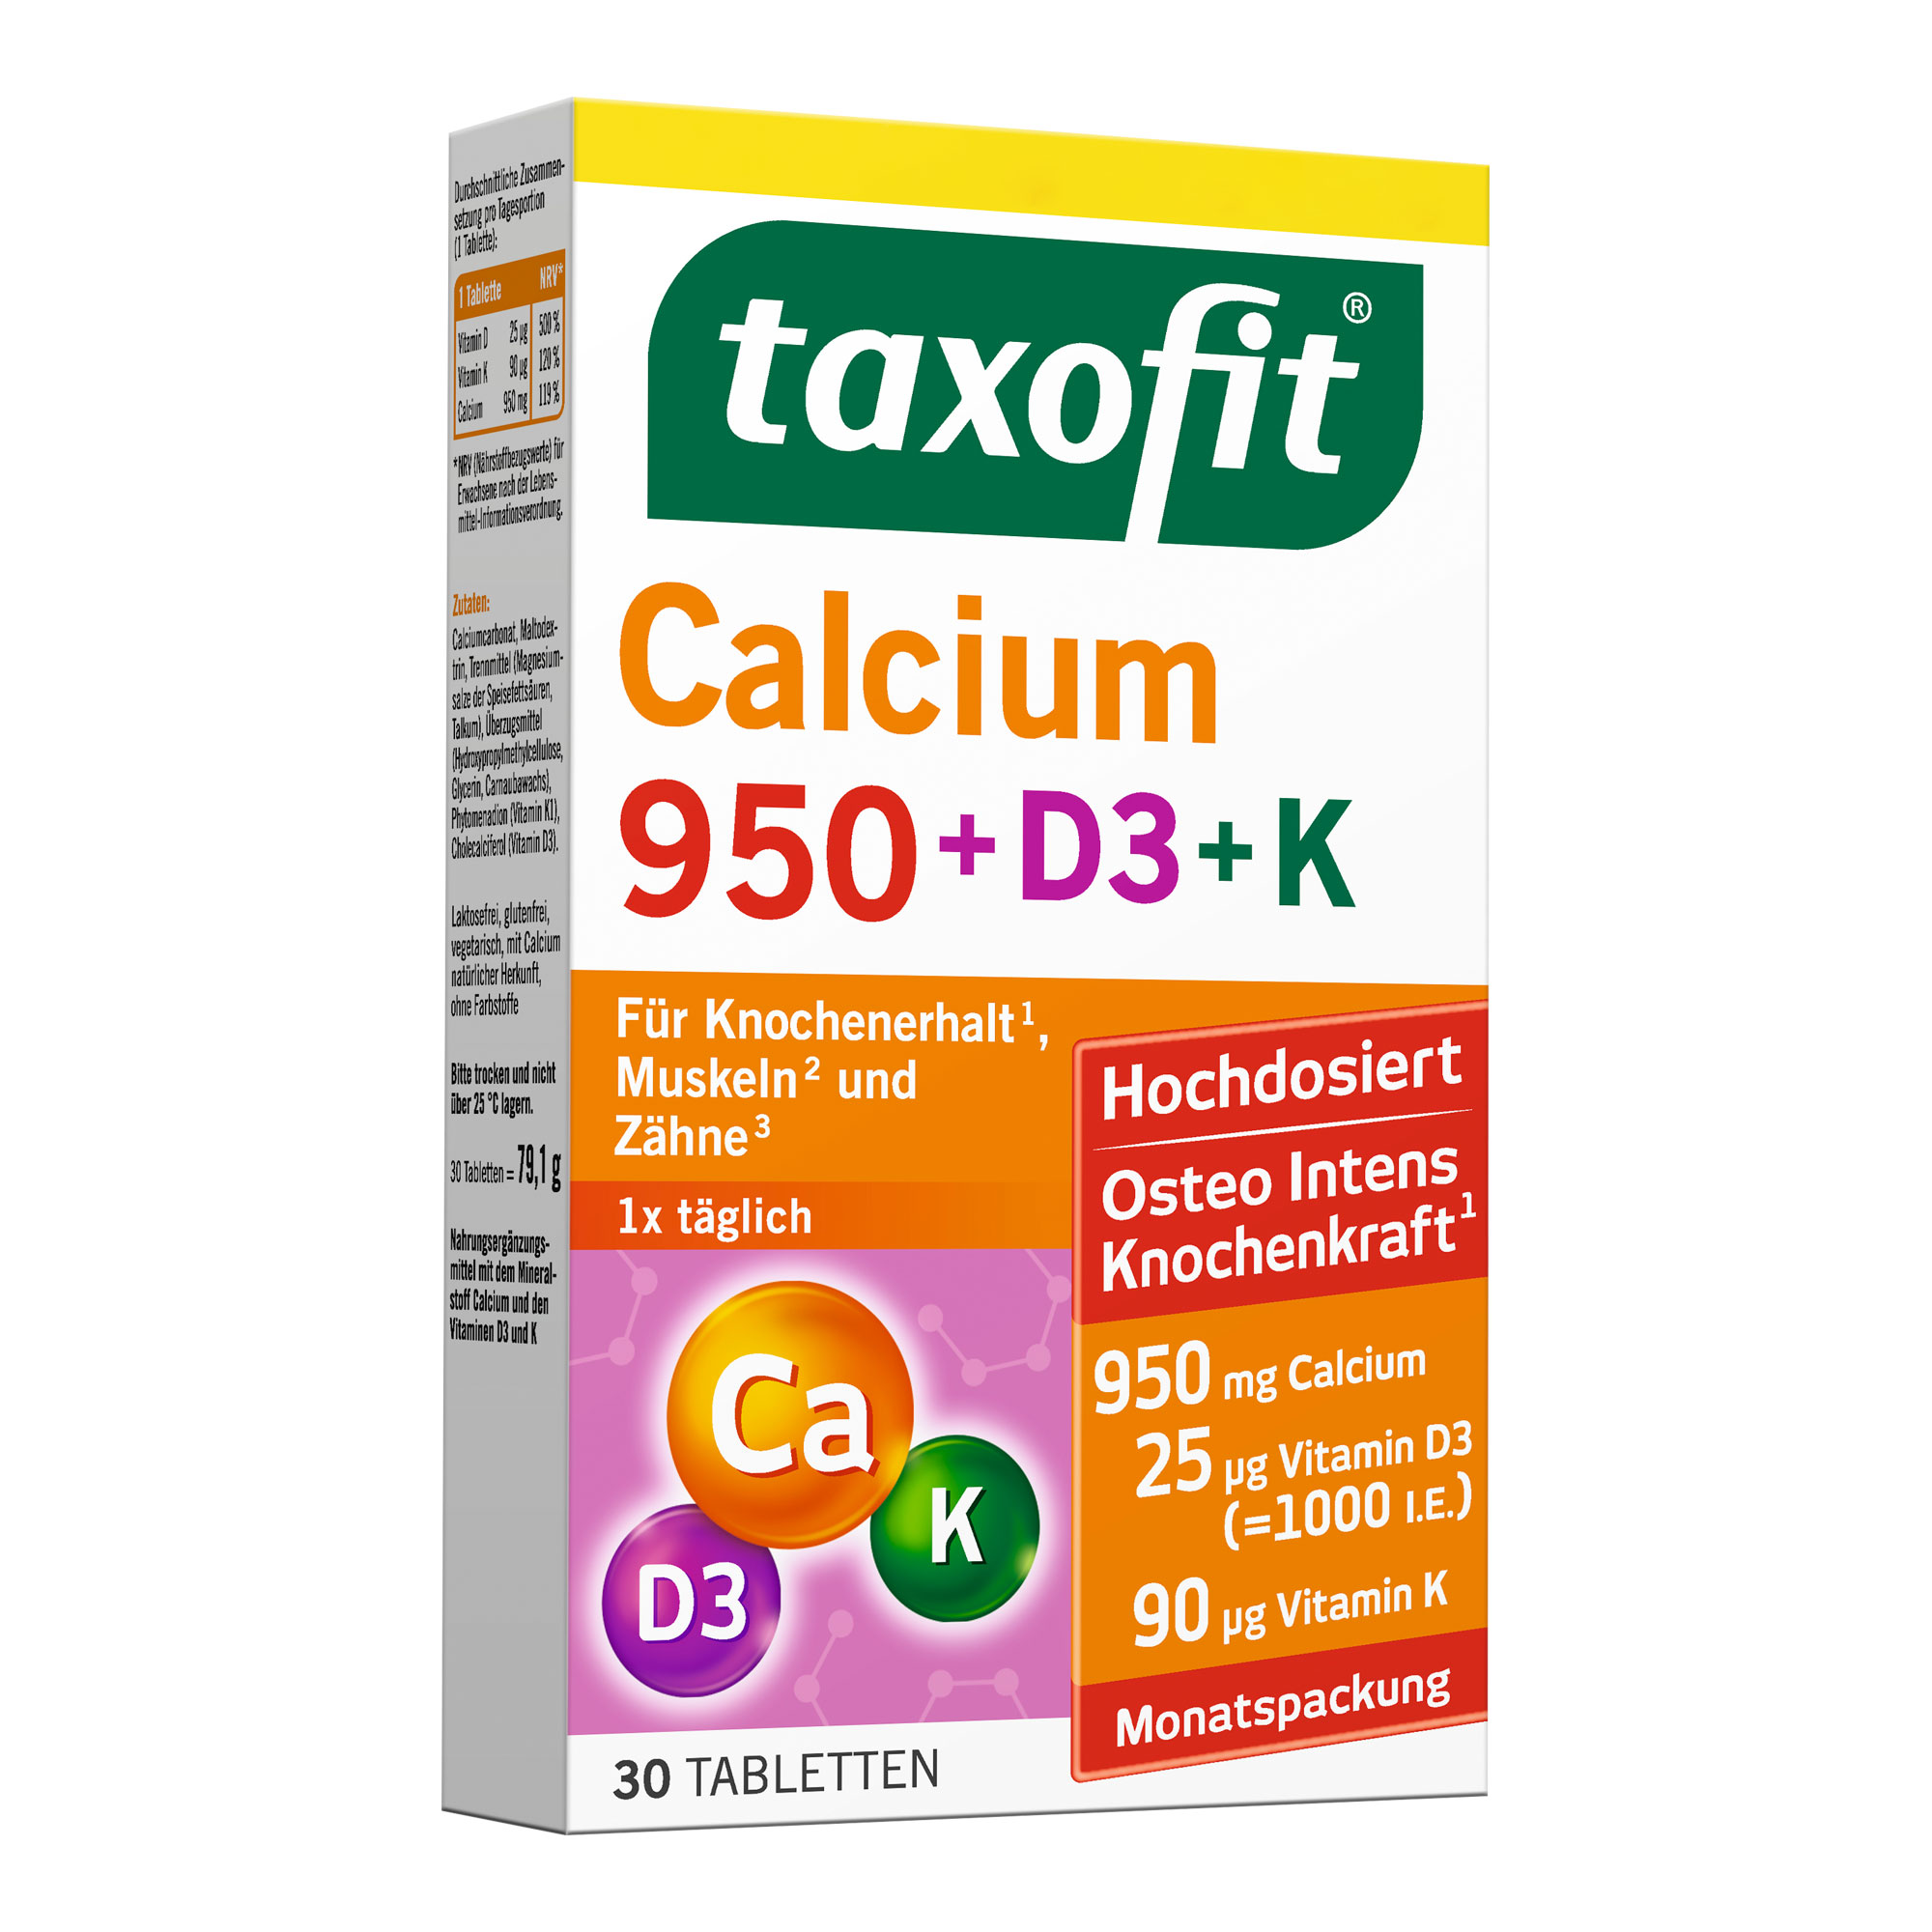 Nahrungsergänzungsmittel mit dem Mineralstoff Calcium und den Vitaminen D3 und K.